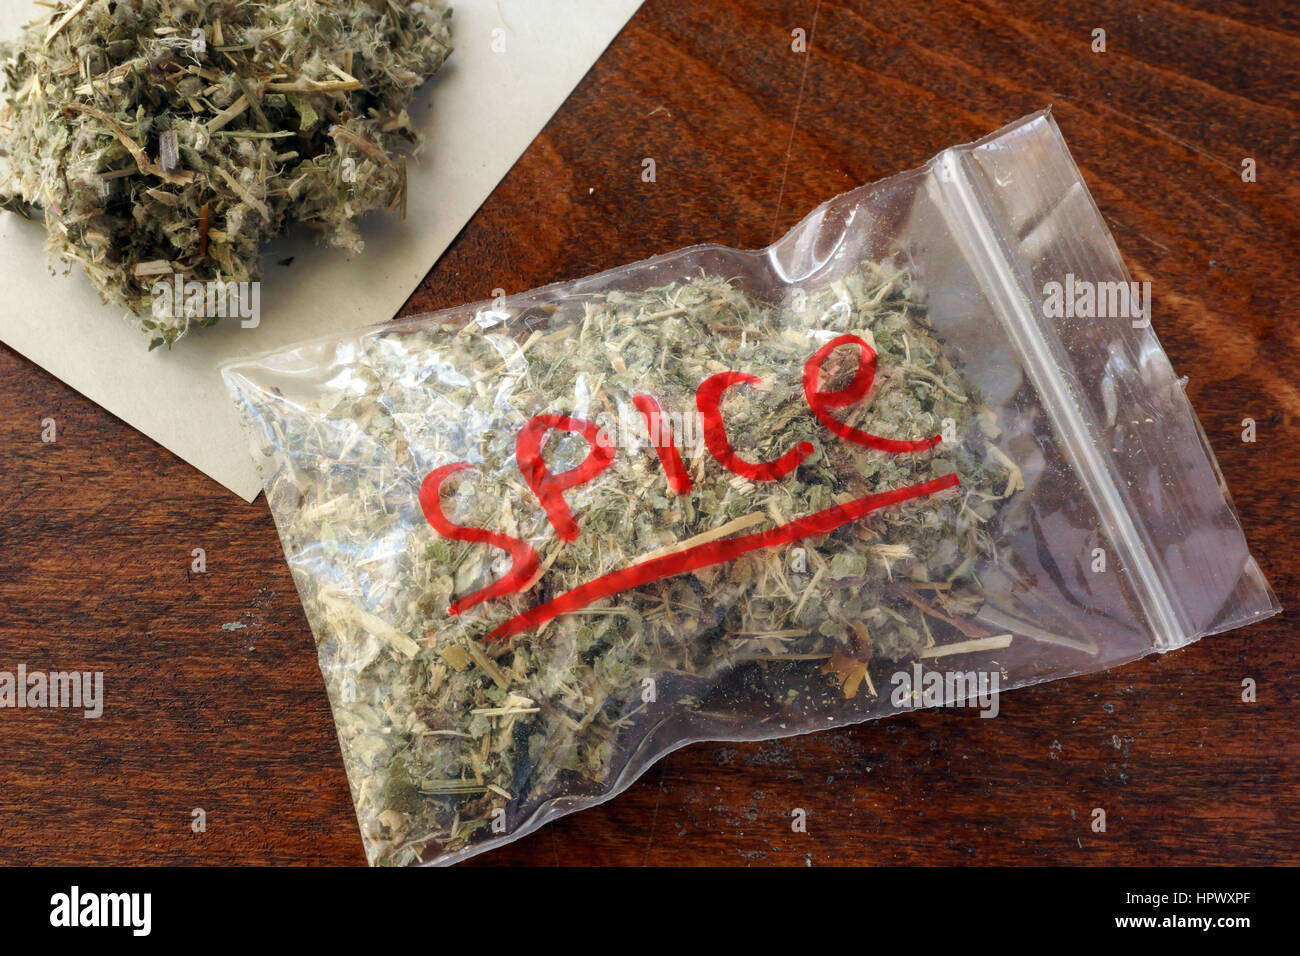 Sac en plastique de la marijuana sur une table. Banque D'Images